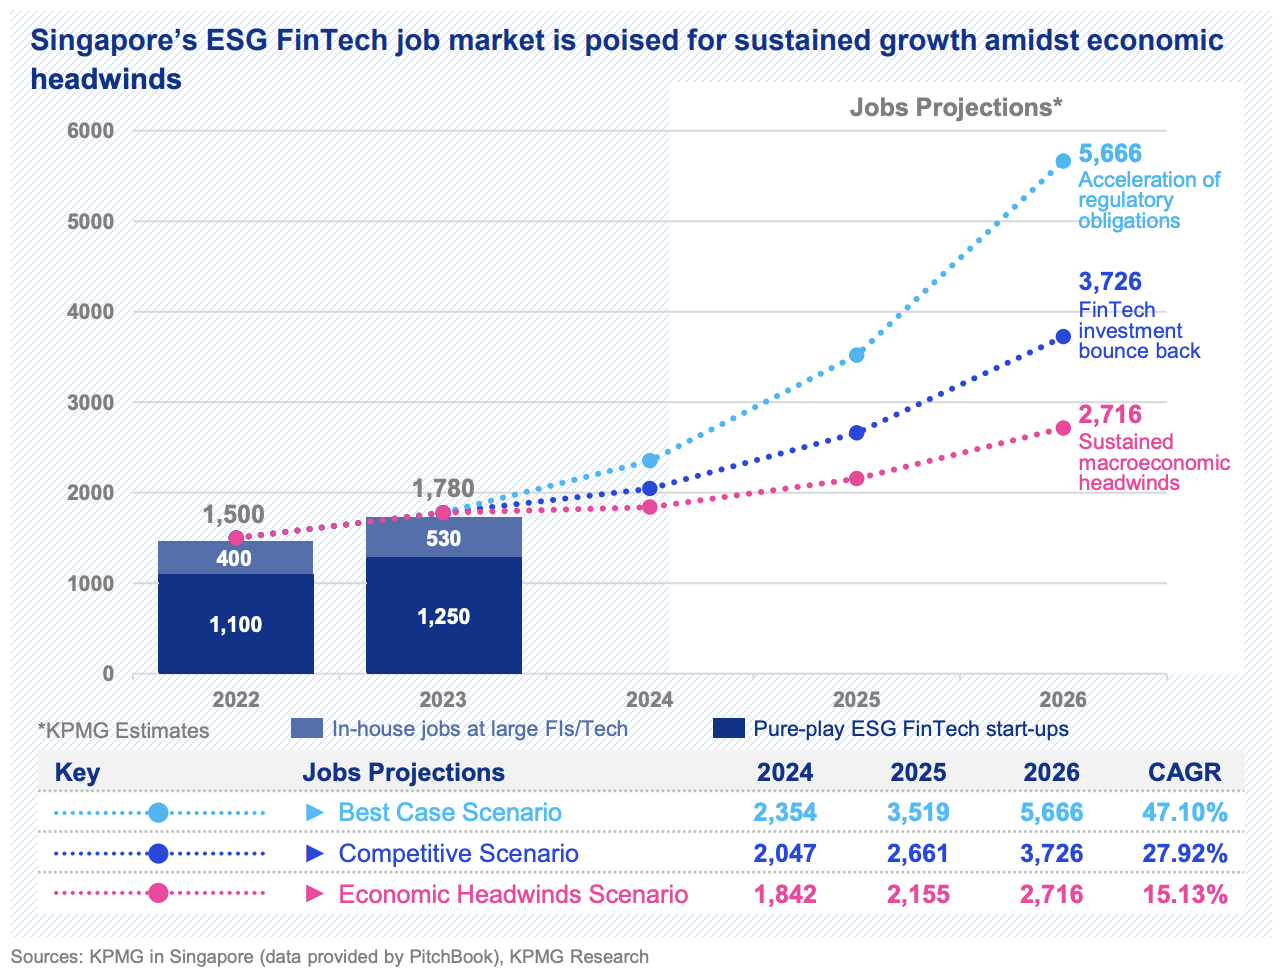 シンガポールにおける ESG フィンテックの求人、出典: 経済減速の中での変革の加速: The Resilient ESG Fintech Sector、シンガポールの KPMG、シンガポール金融庁 (MAS)、2023 年 XNUMX 月